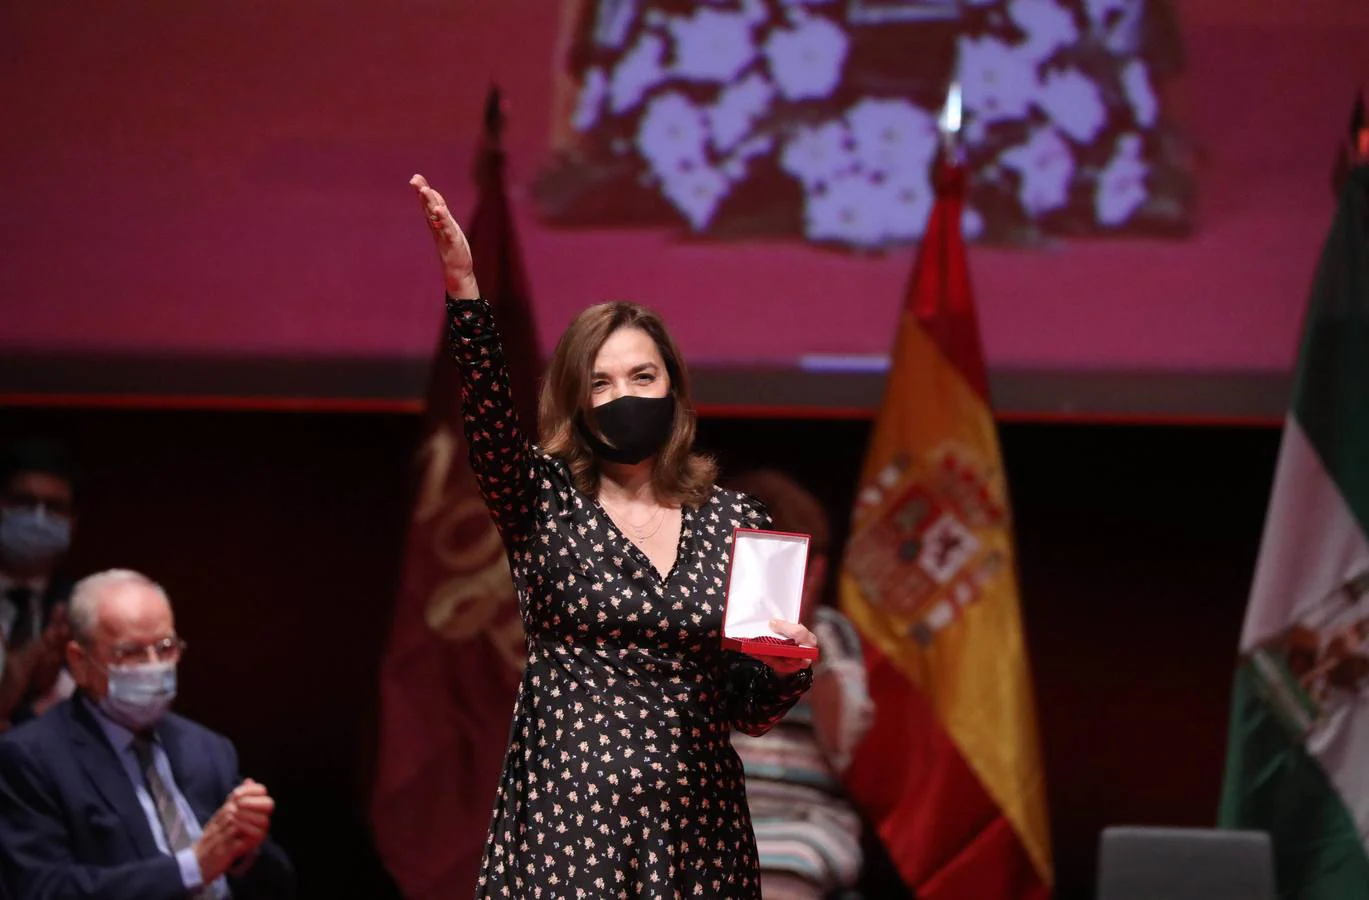 La entrega de las medallas de la ciudad de Sevilla, en imágenes (I)